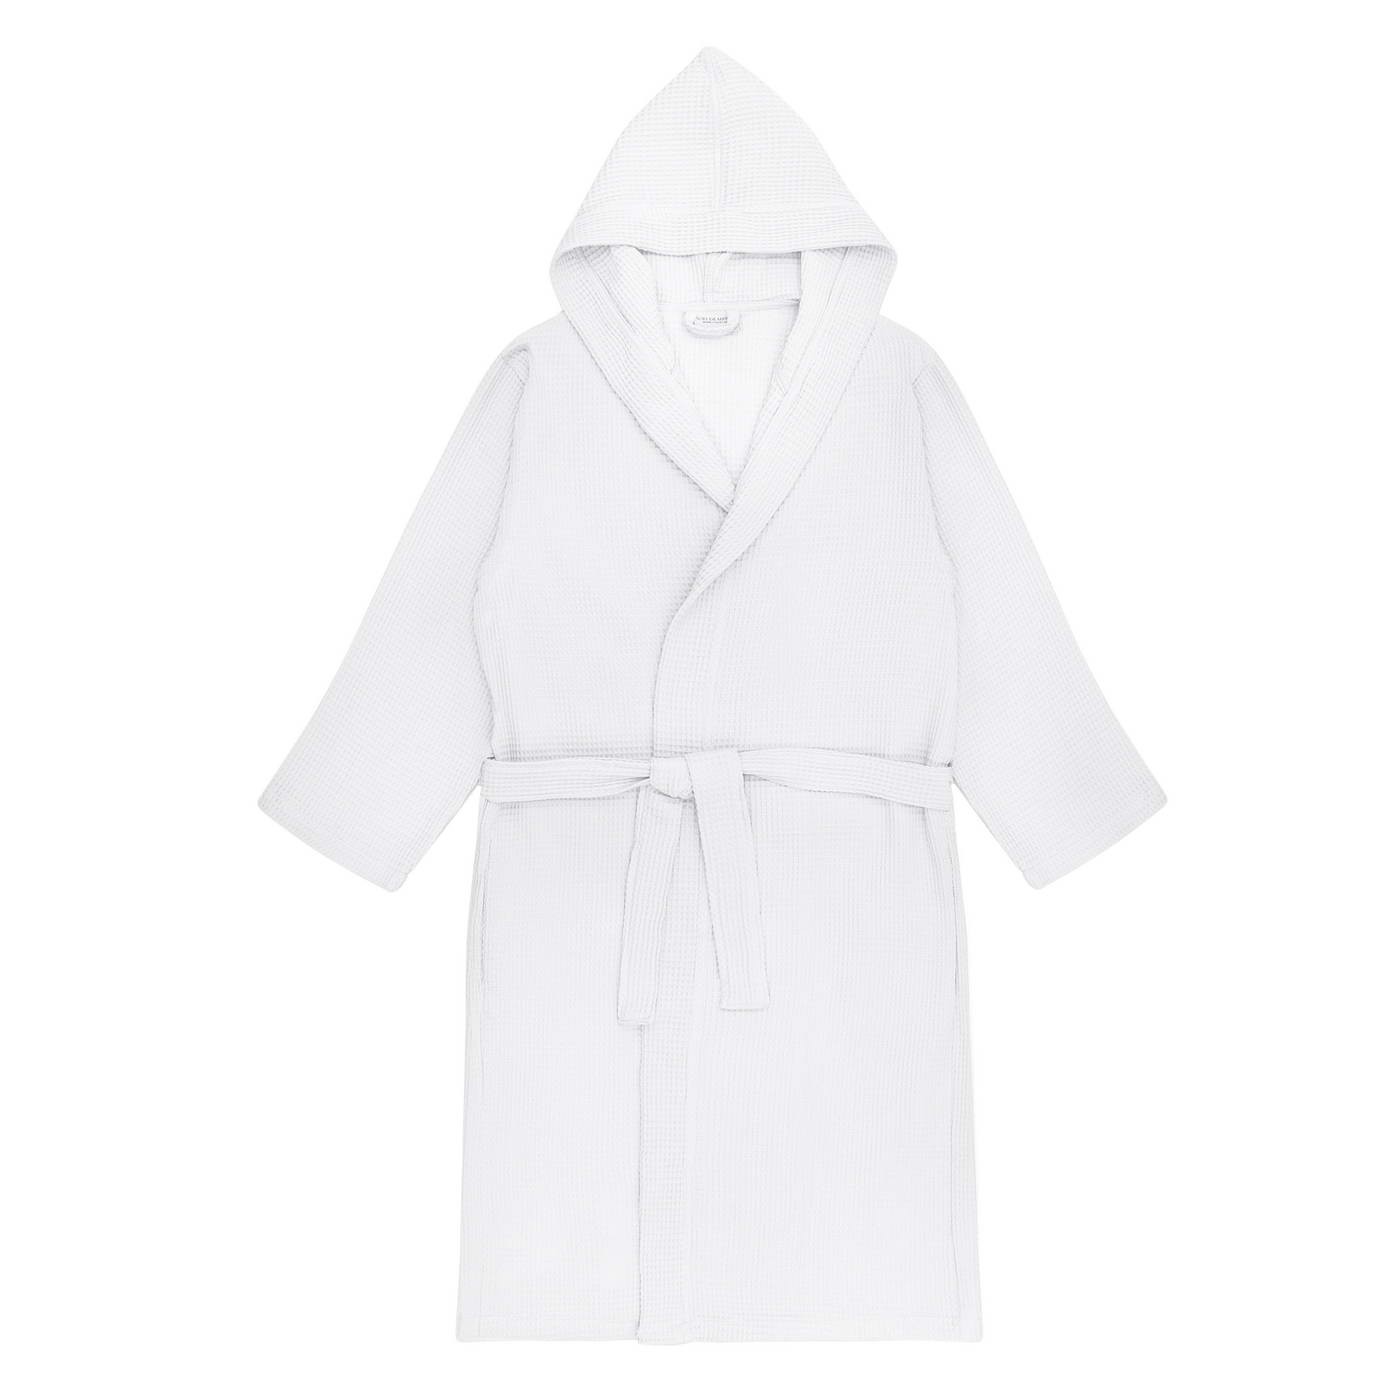 Банный халат Naomi цвет: белый (XL)